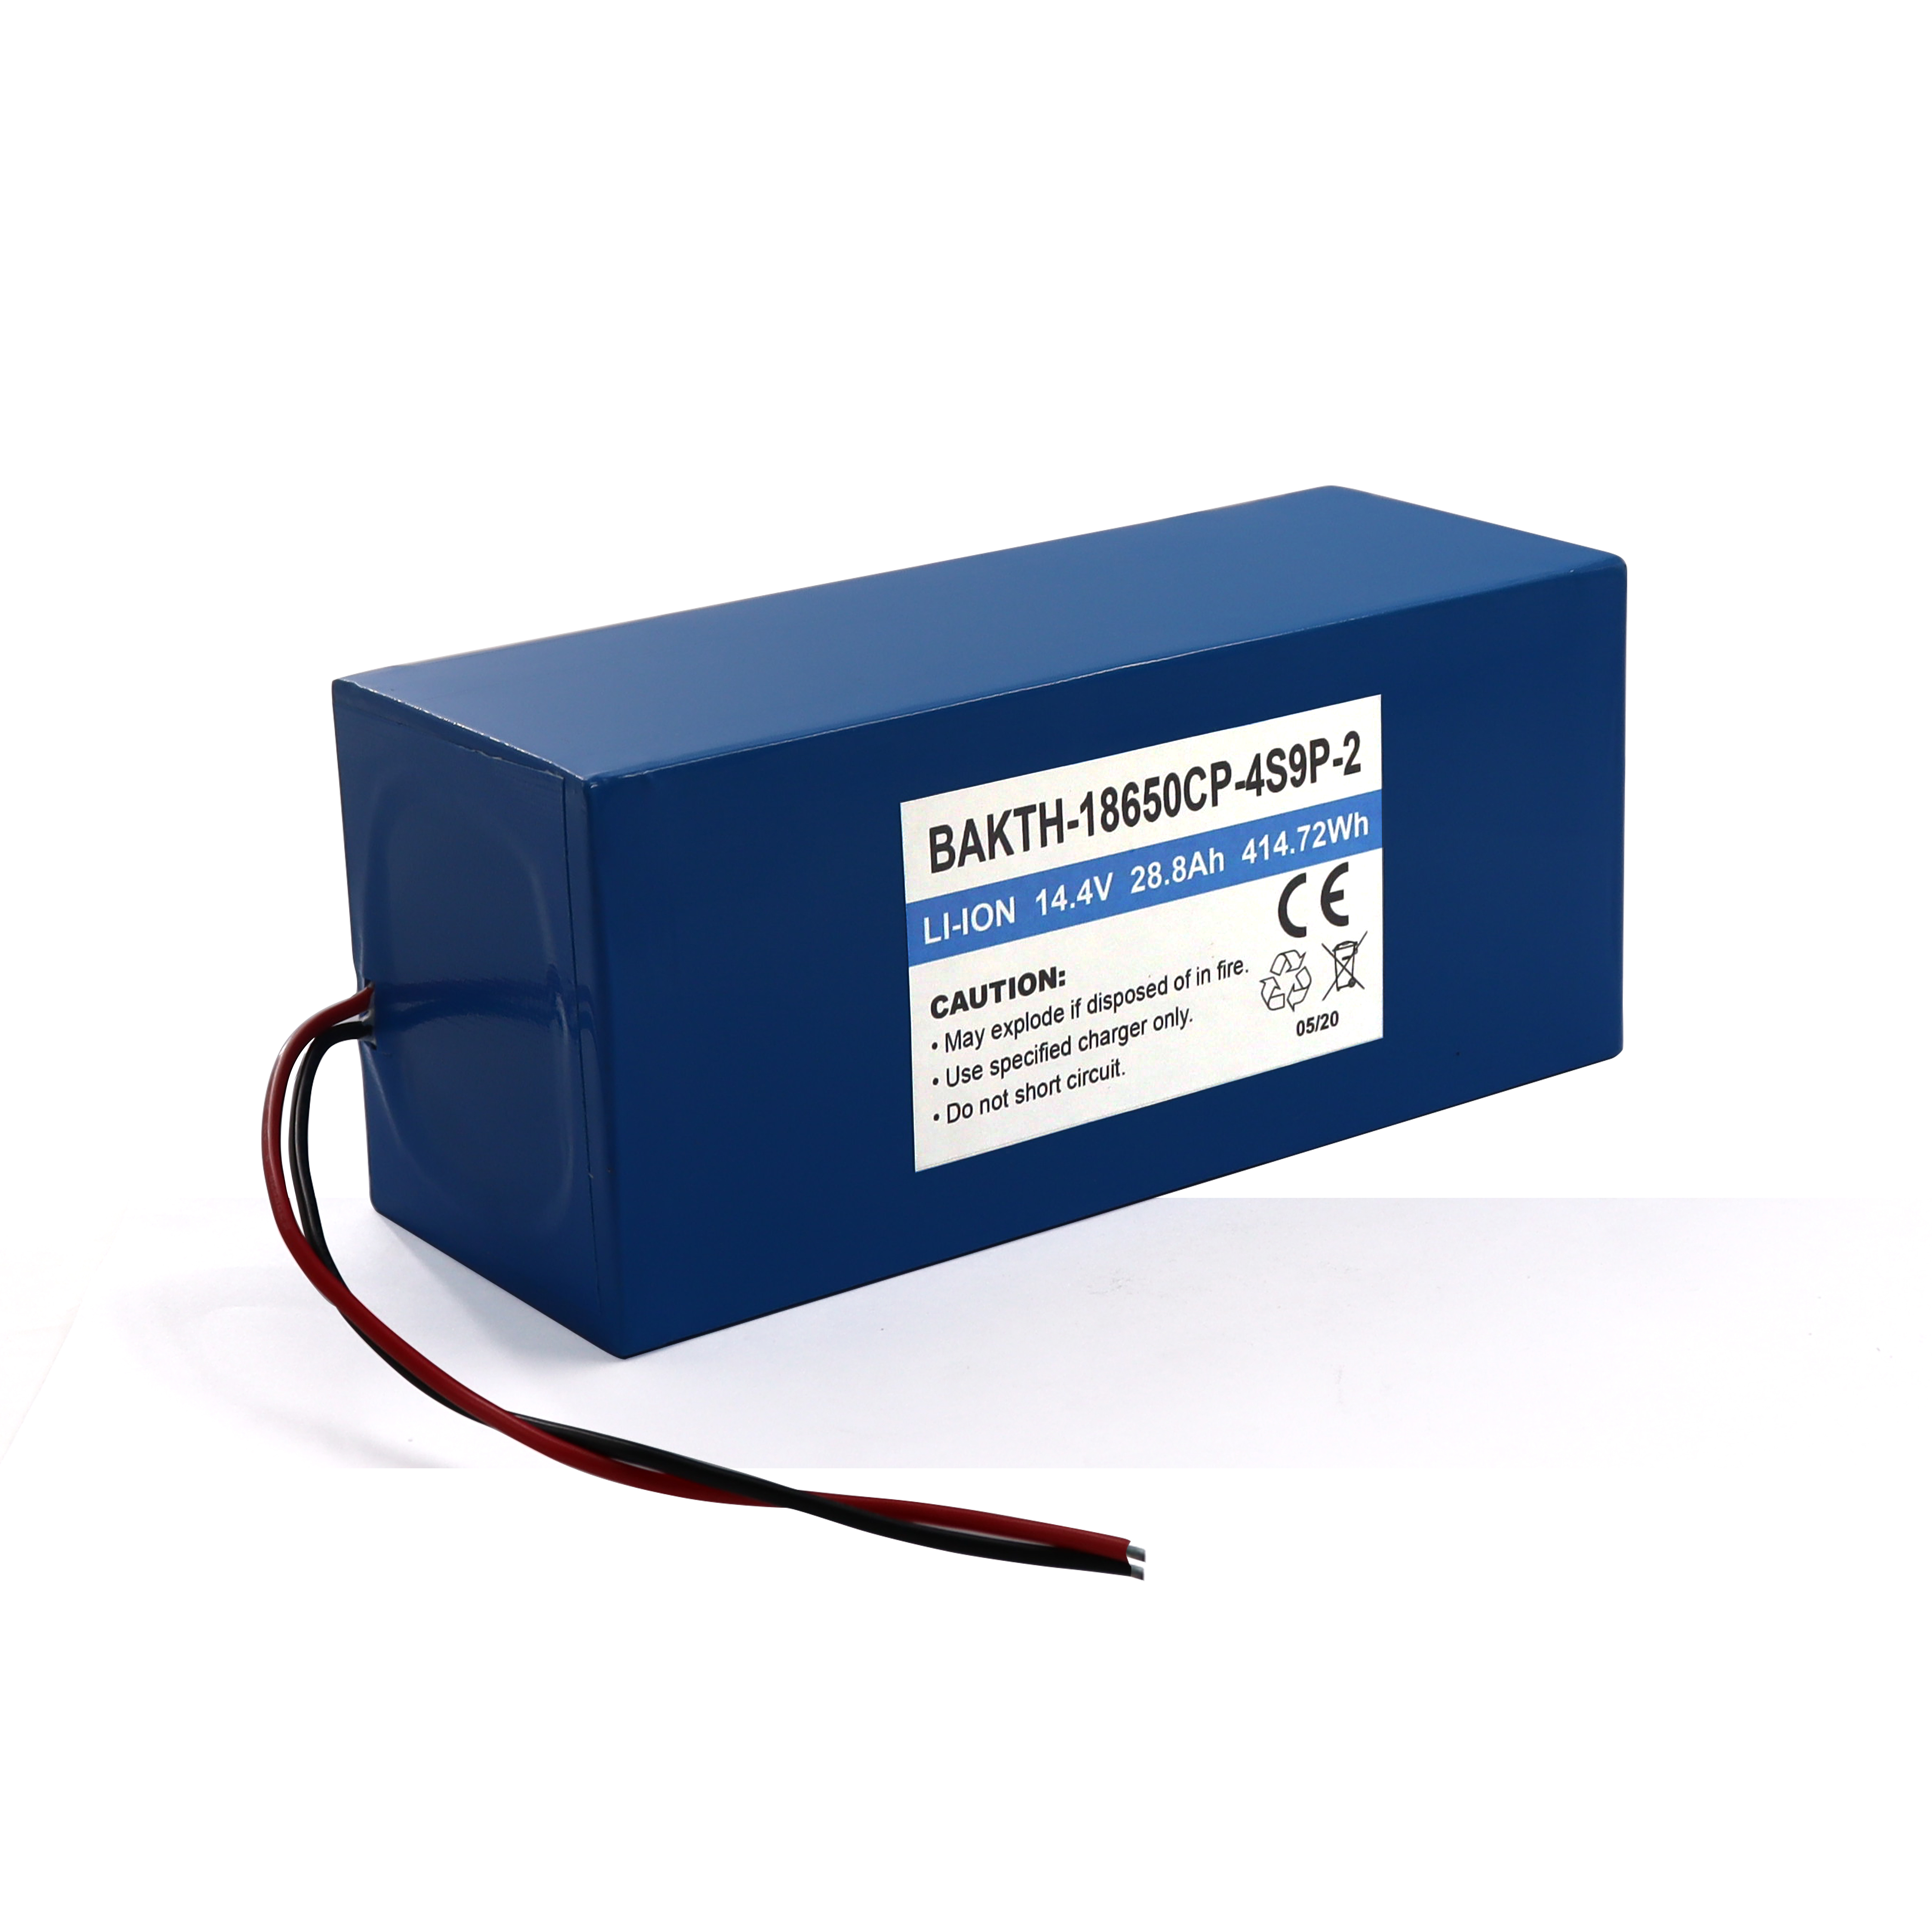 Tiefe Zyklus hohe Kapazität 14,8 V 48AH Lithium Polymer Batteriepack 6050100P 4S8P für elektrisches Gerät